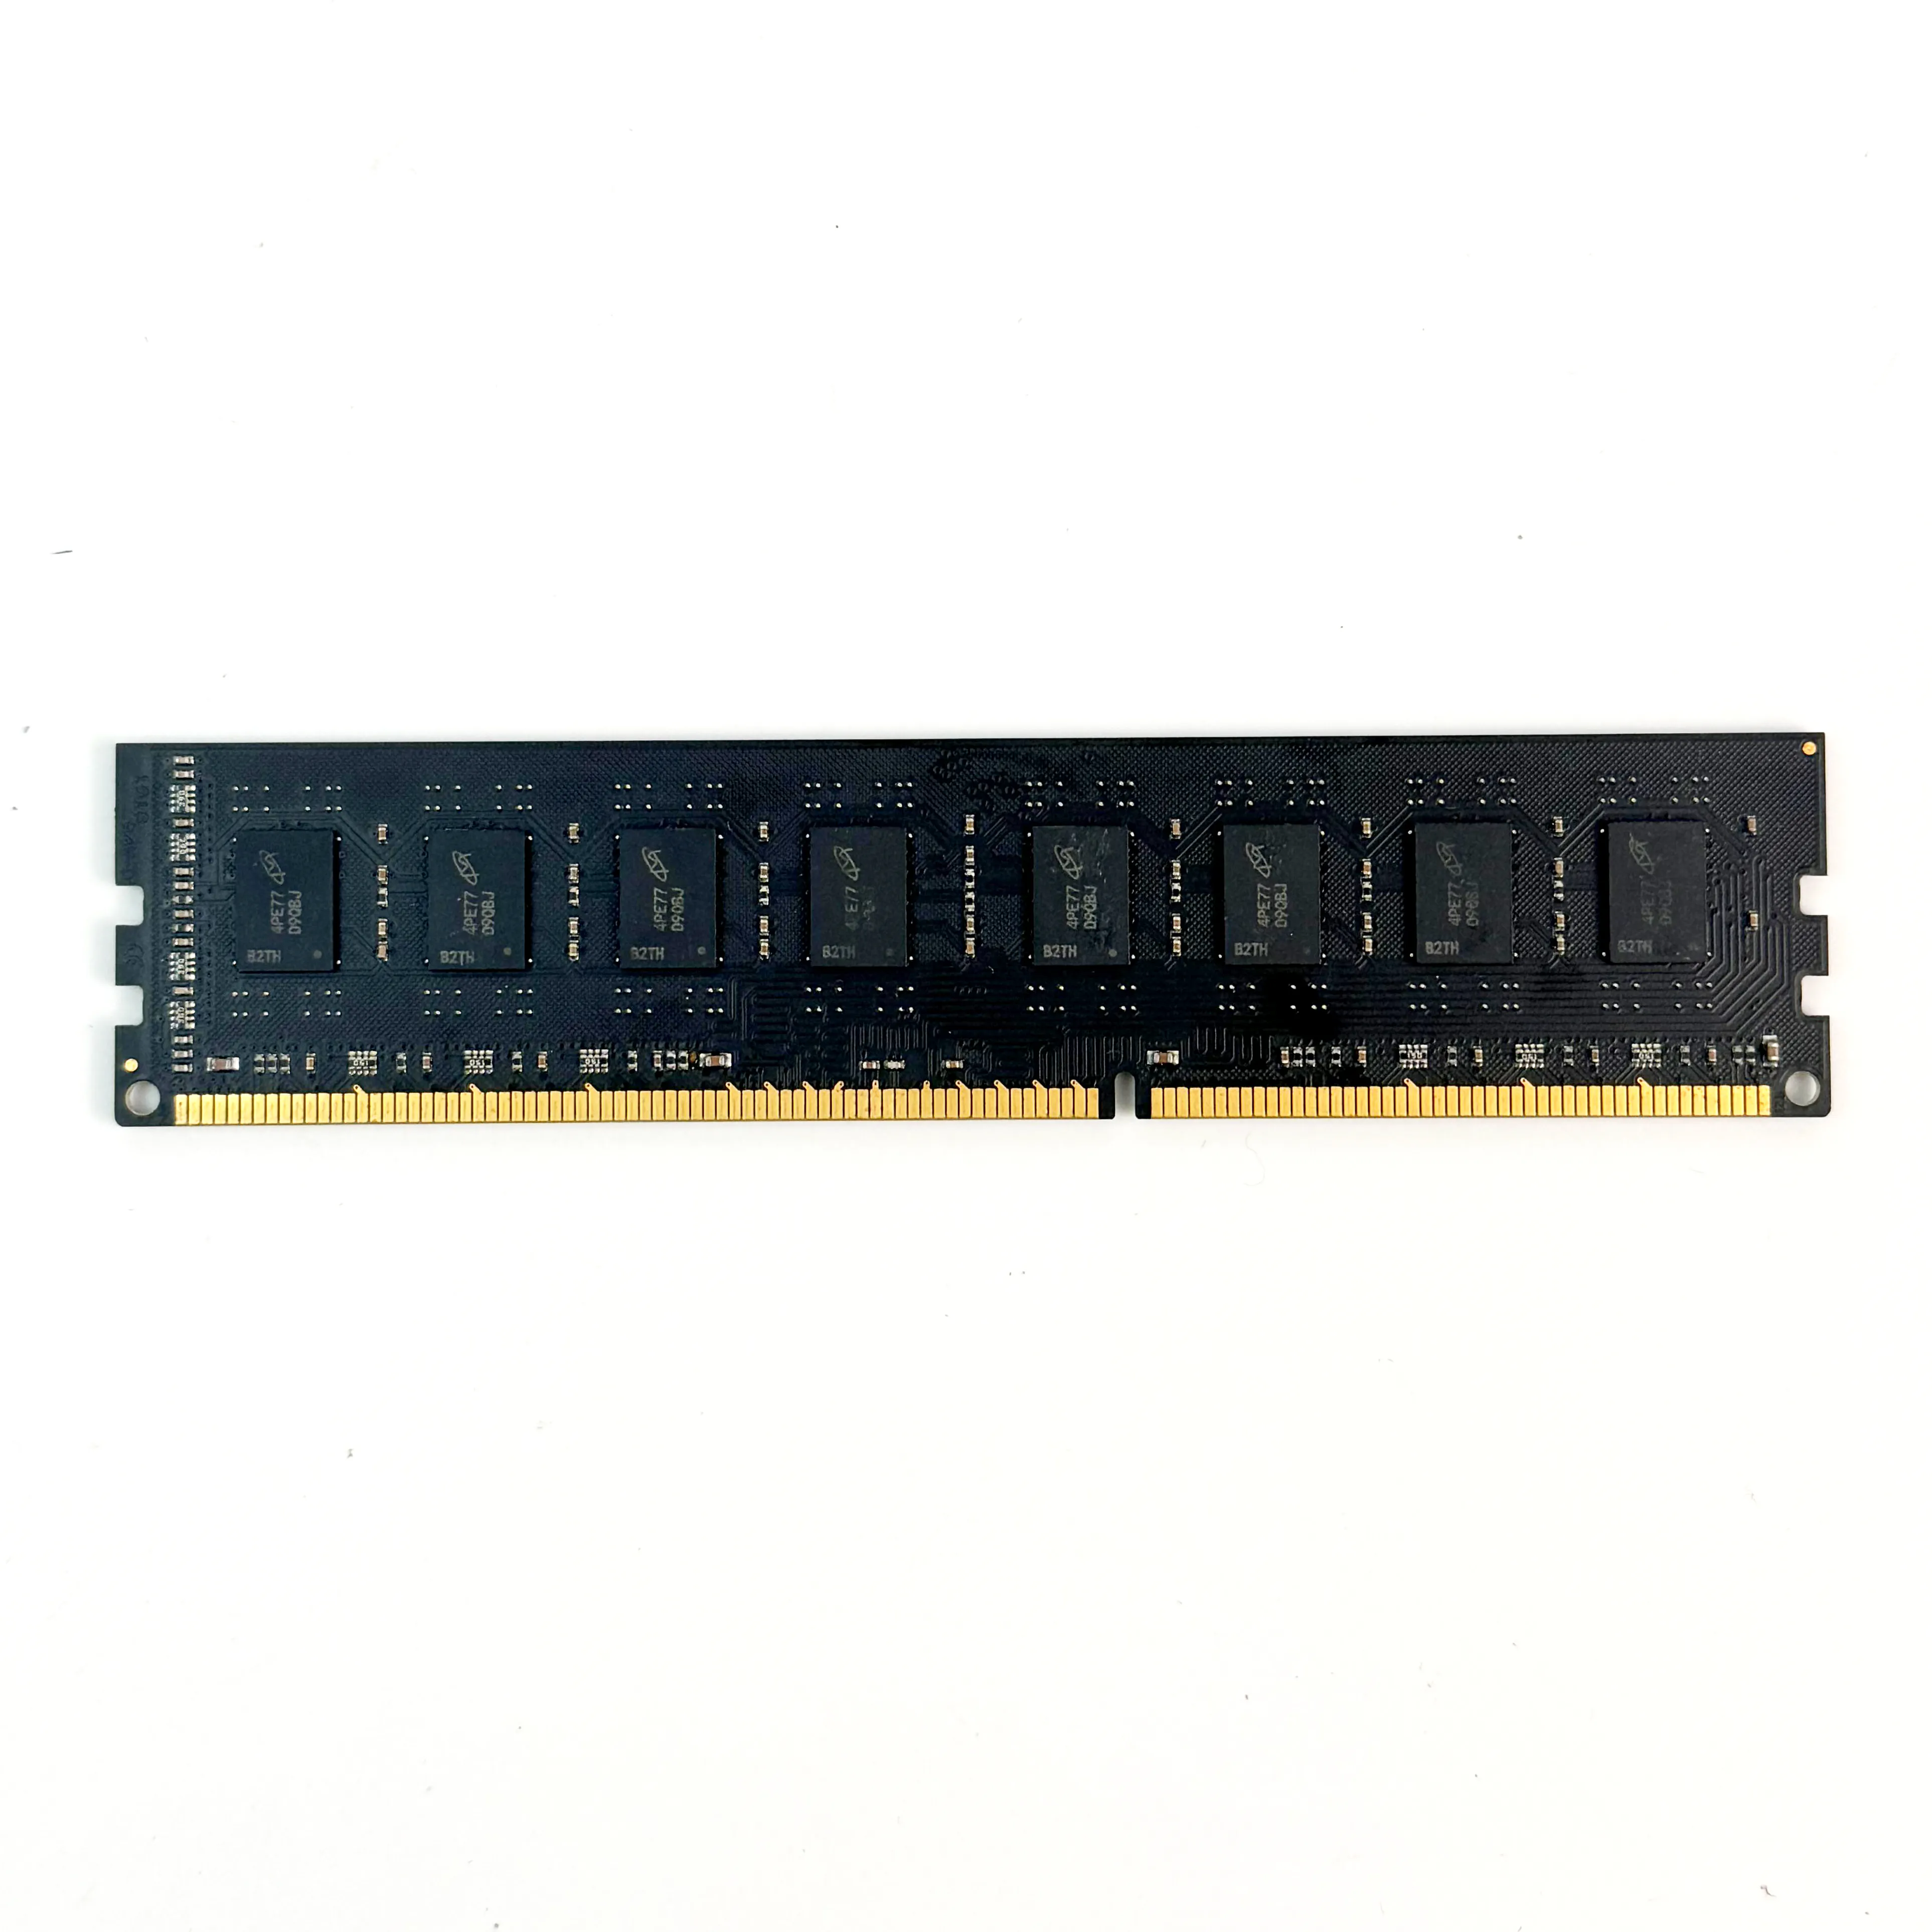 ذاكرة وصول عشوائي ddr4 لكمبيوتر سطح المكتب وألعاب الكمبيوتر DDR 4 3200 ميجاهرتز XMP 288pin 8GB 16GB RGB ذاكرة وصول عشوائي ddr4 للوحة الأم AMD Inter لسطح المكتب